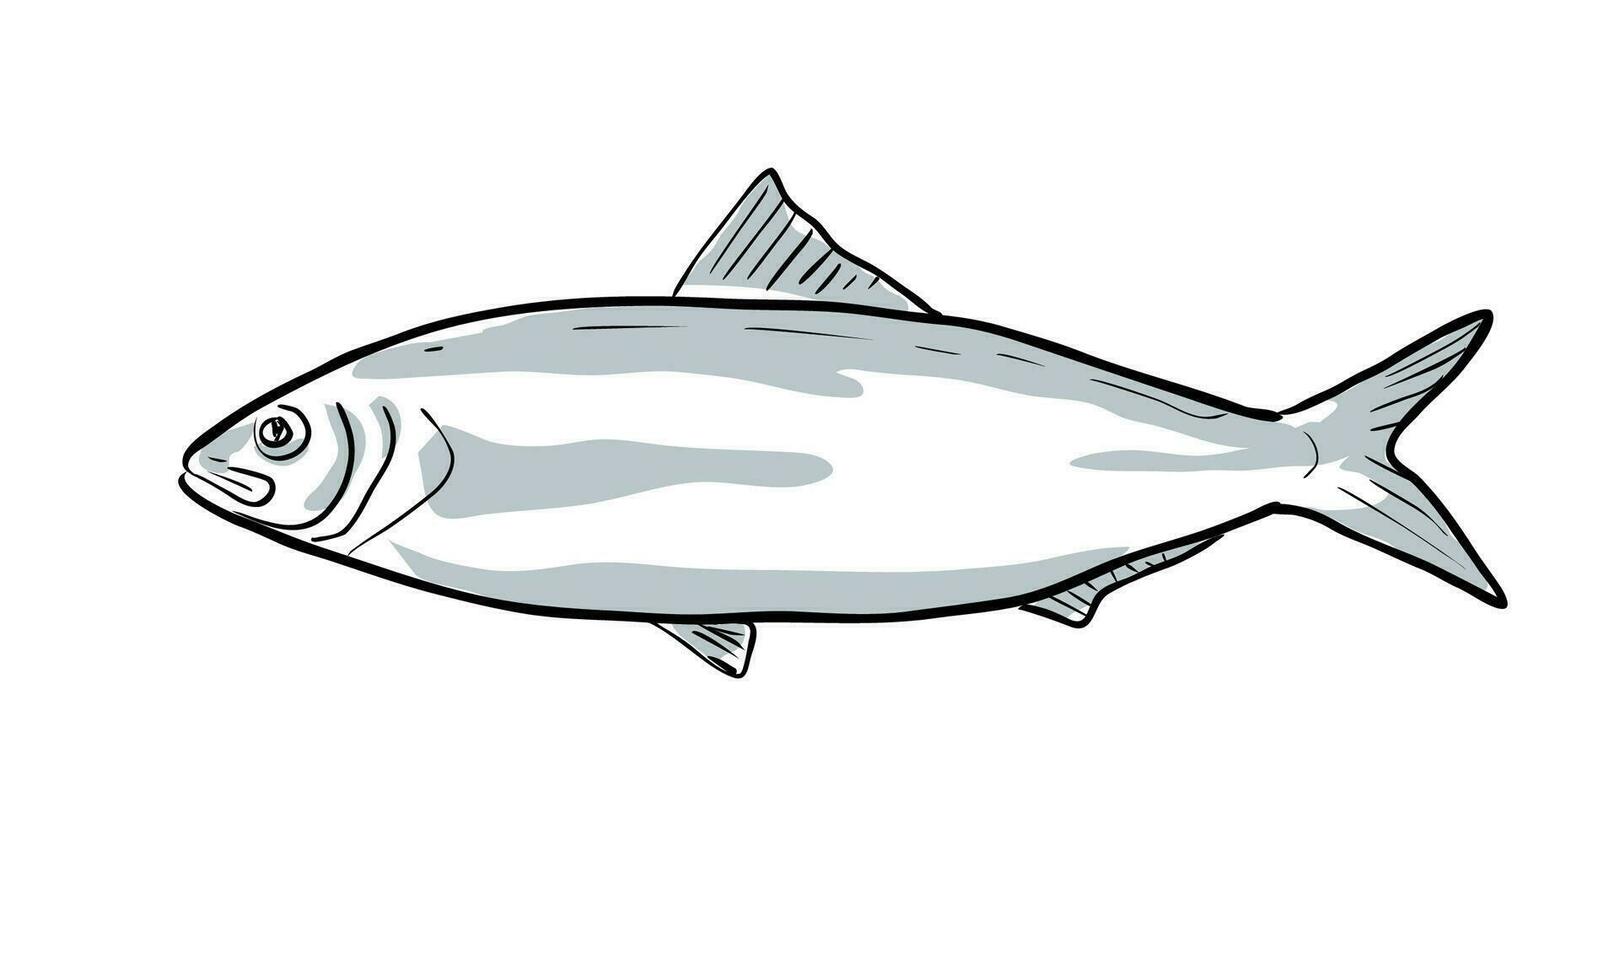 Alabama sábalo pescado de Florida dibujos animados dibujo vector